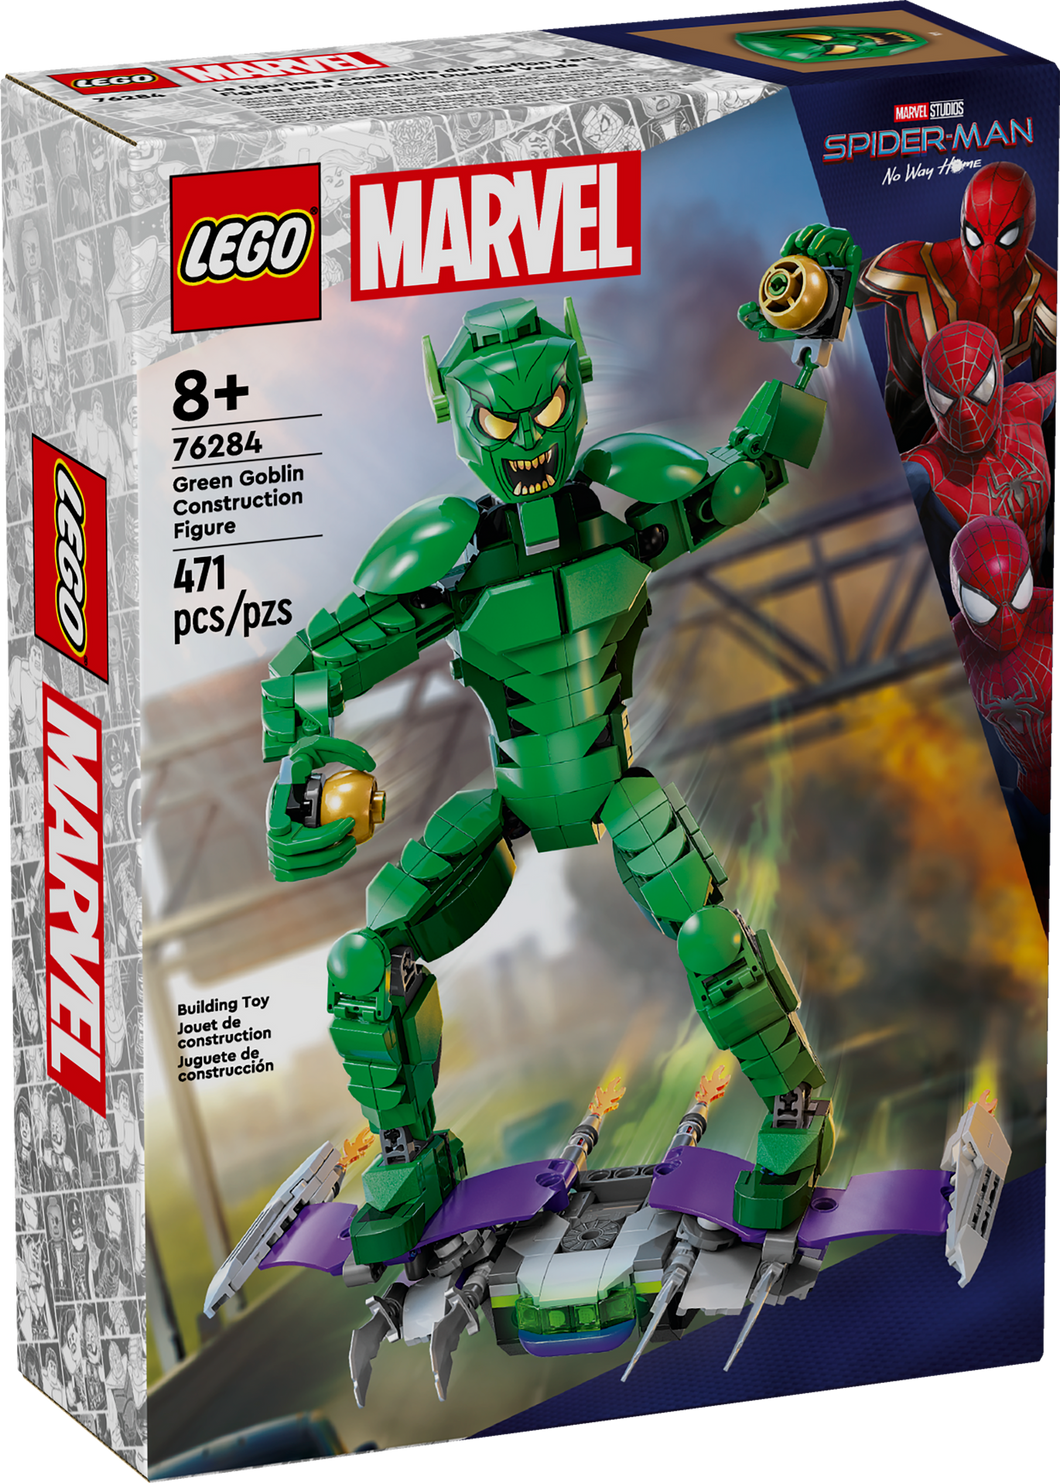 Marvel Green Goblin Construction Figure LEGO 76284 NIB